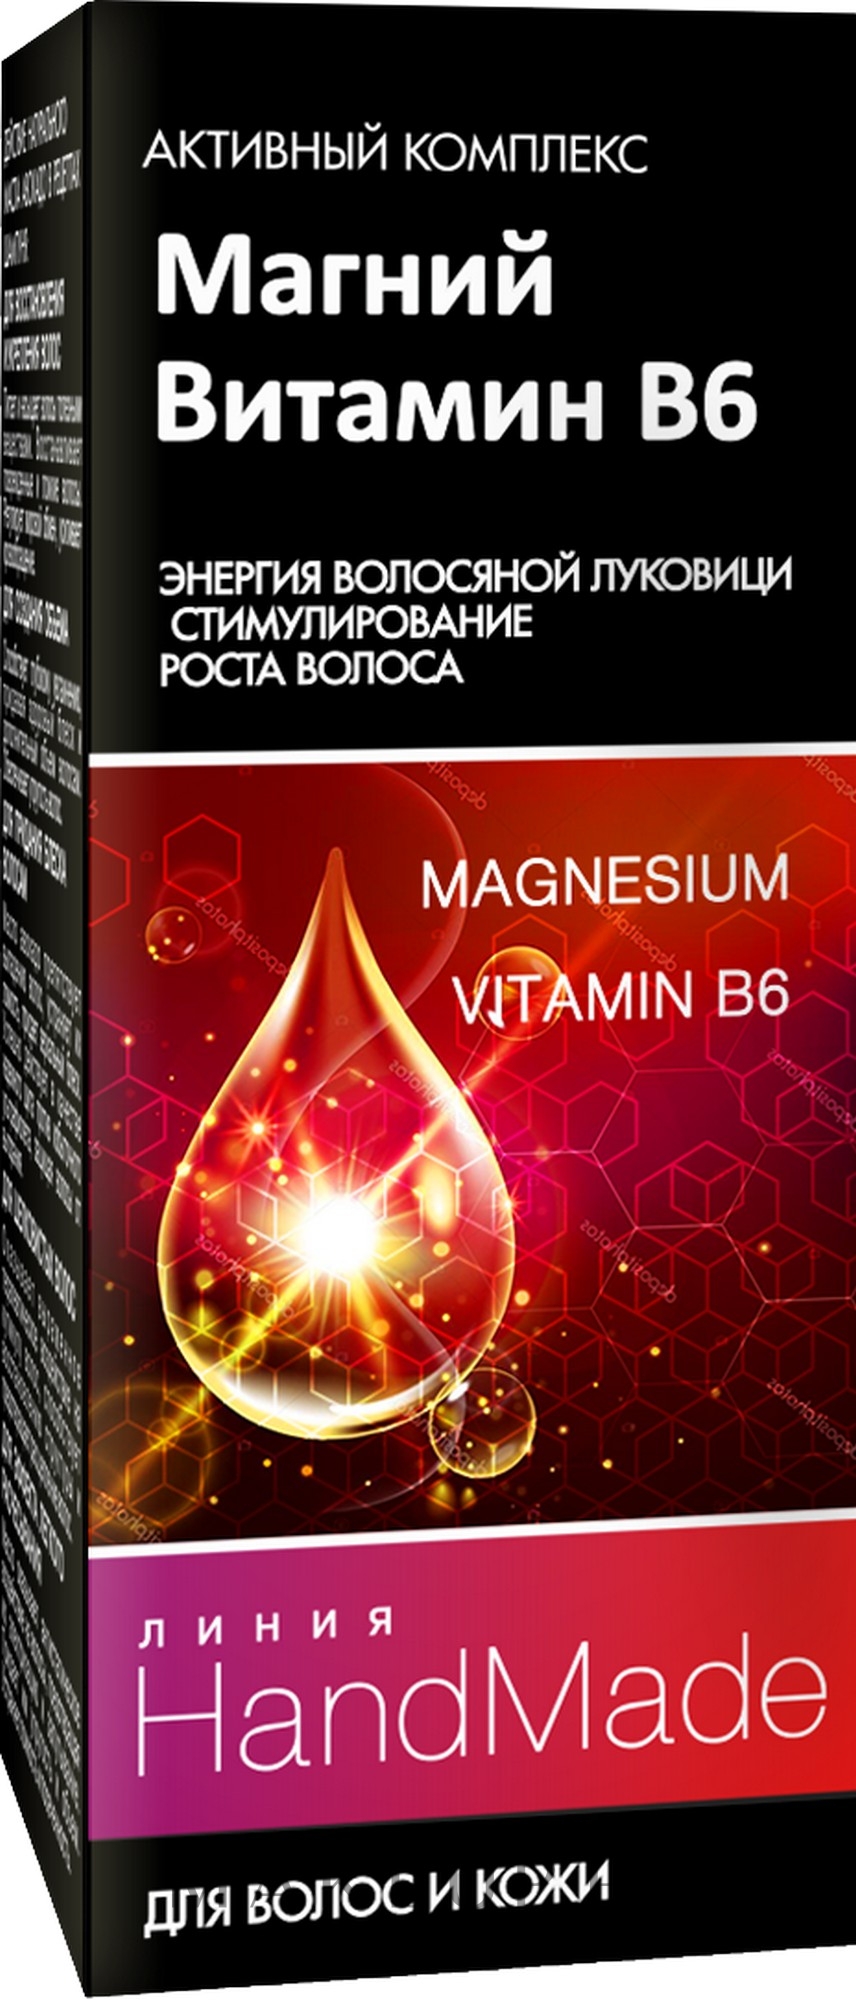 Magnez i witamina B6 na zdrowe włosy i skórę głowy - Pharma Group Laboratories Handmade — Zdjęcie 5 ml